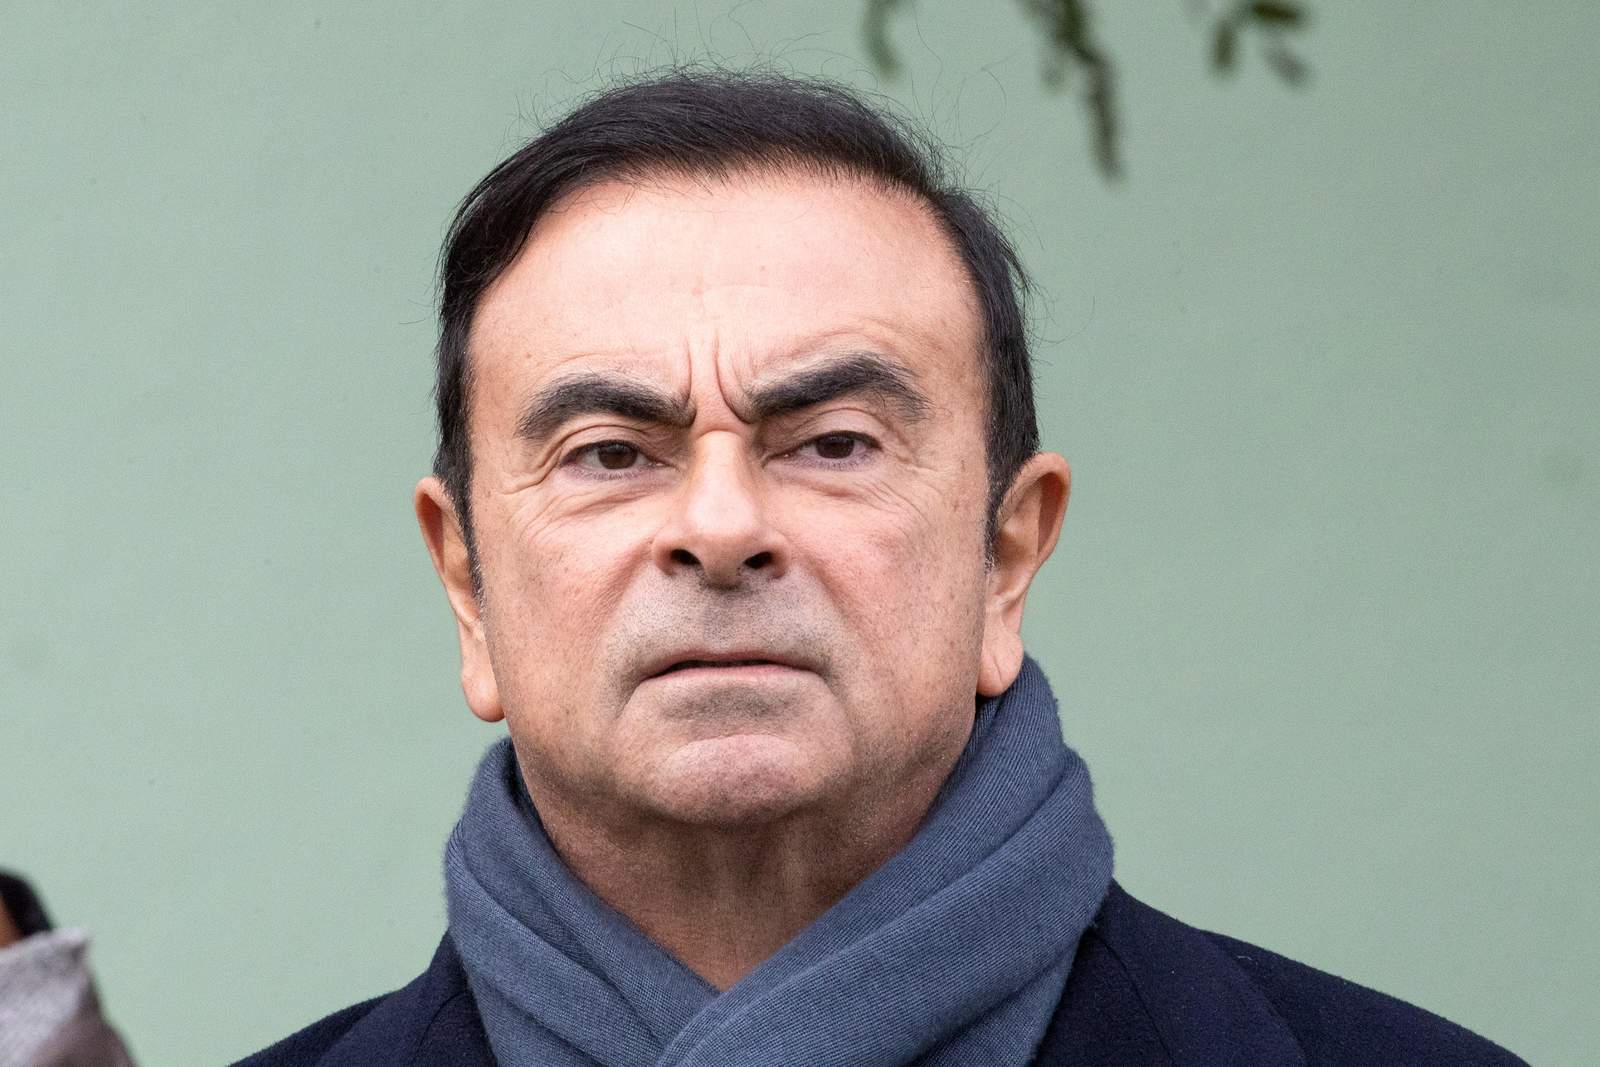 Ghosn ha sido objeto de una investigación de la fiscalía de Tokio después de que su propia empresa condujera una investigación interna y detectara dichas irregularidades y 'malas conductas' por parte del ejecutivo. (EFE)